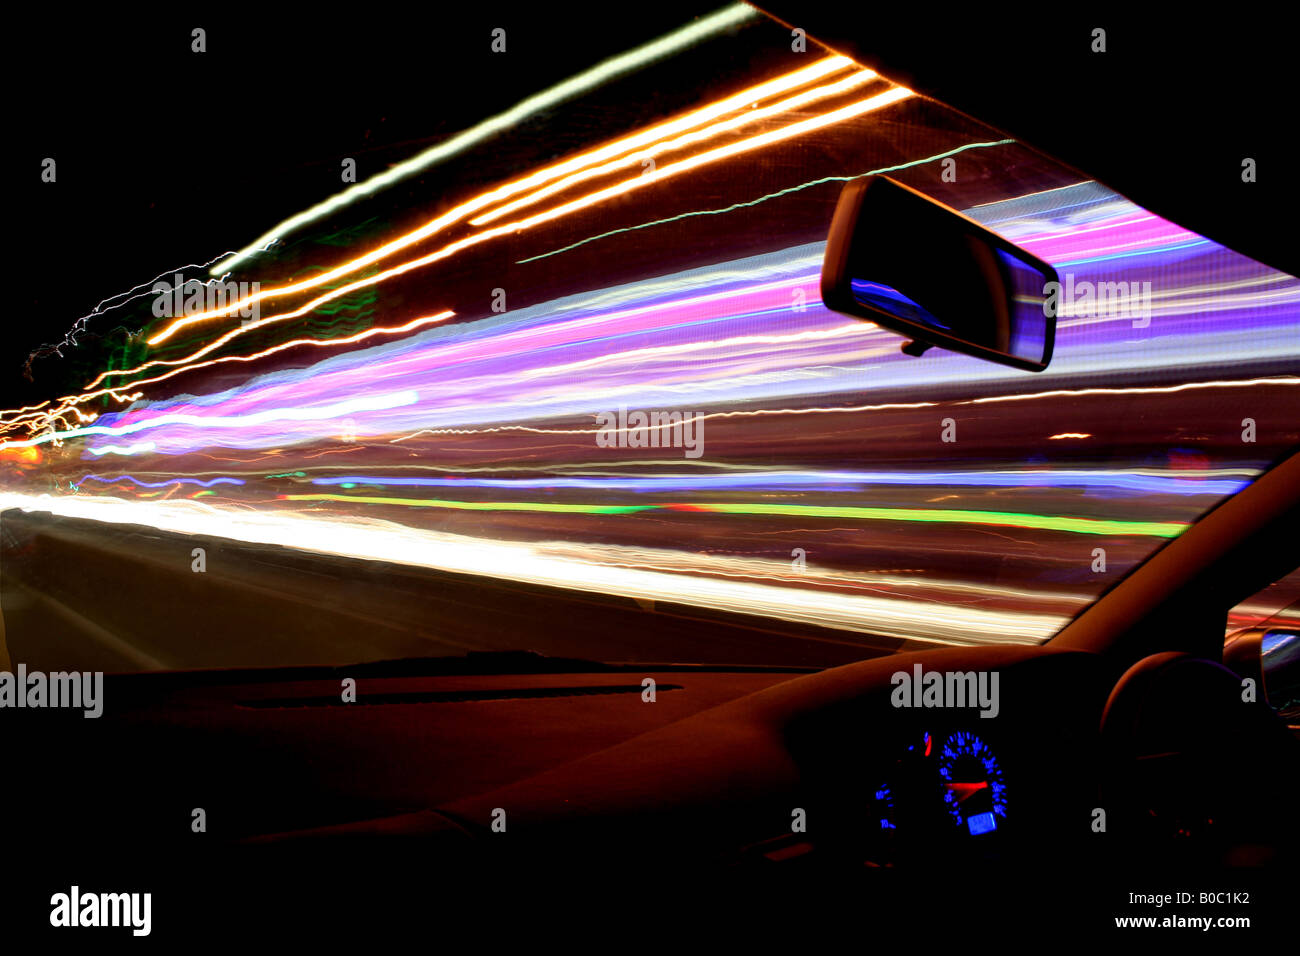 Straßenbeleuchtung, Verkehrs- und Ladenfronten produzieren atemberaubende Lichtspuren als die Kamera Streifen durch in einem schnell fahrenden Auto Stockfoto